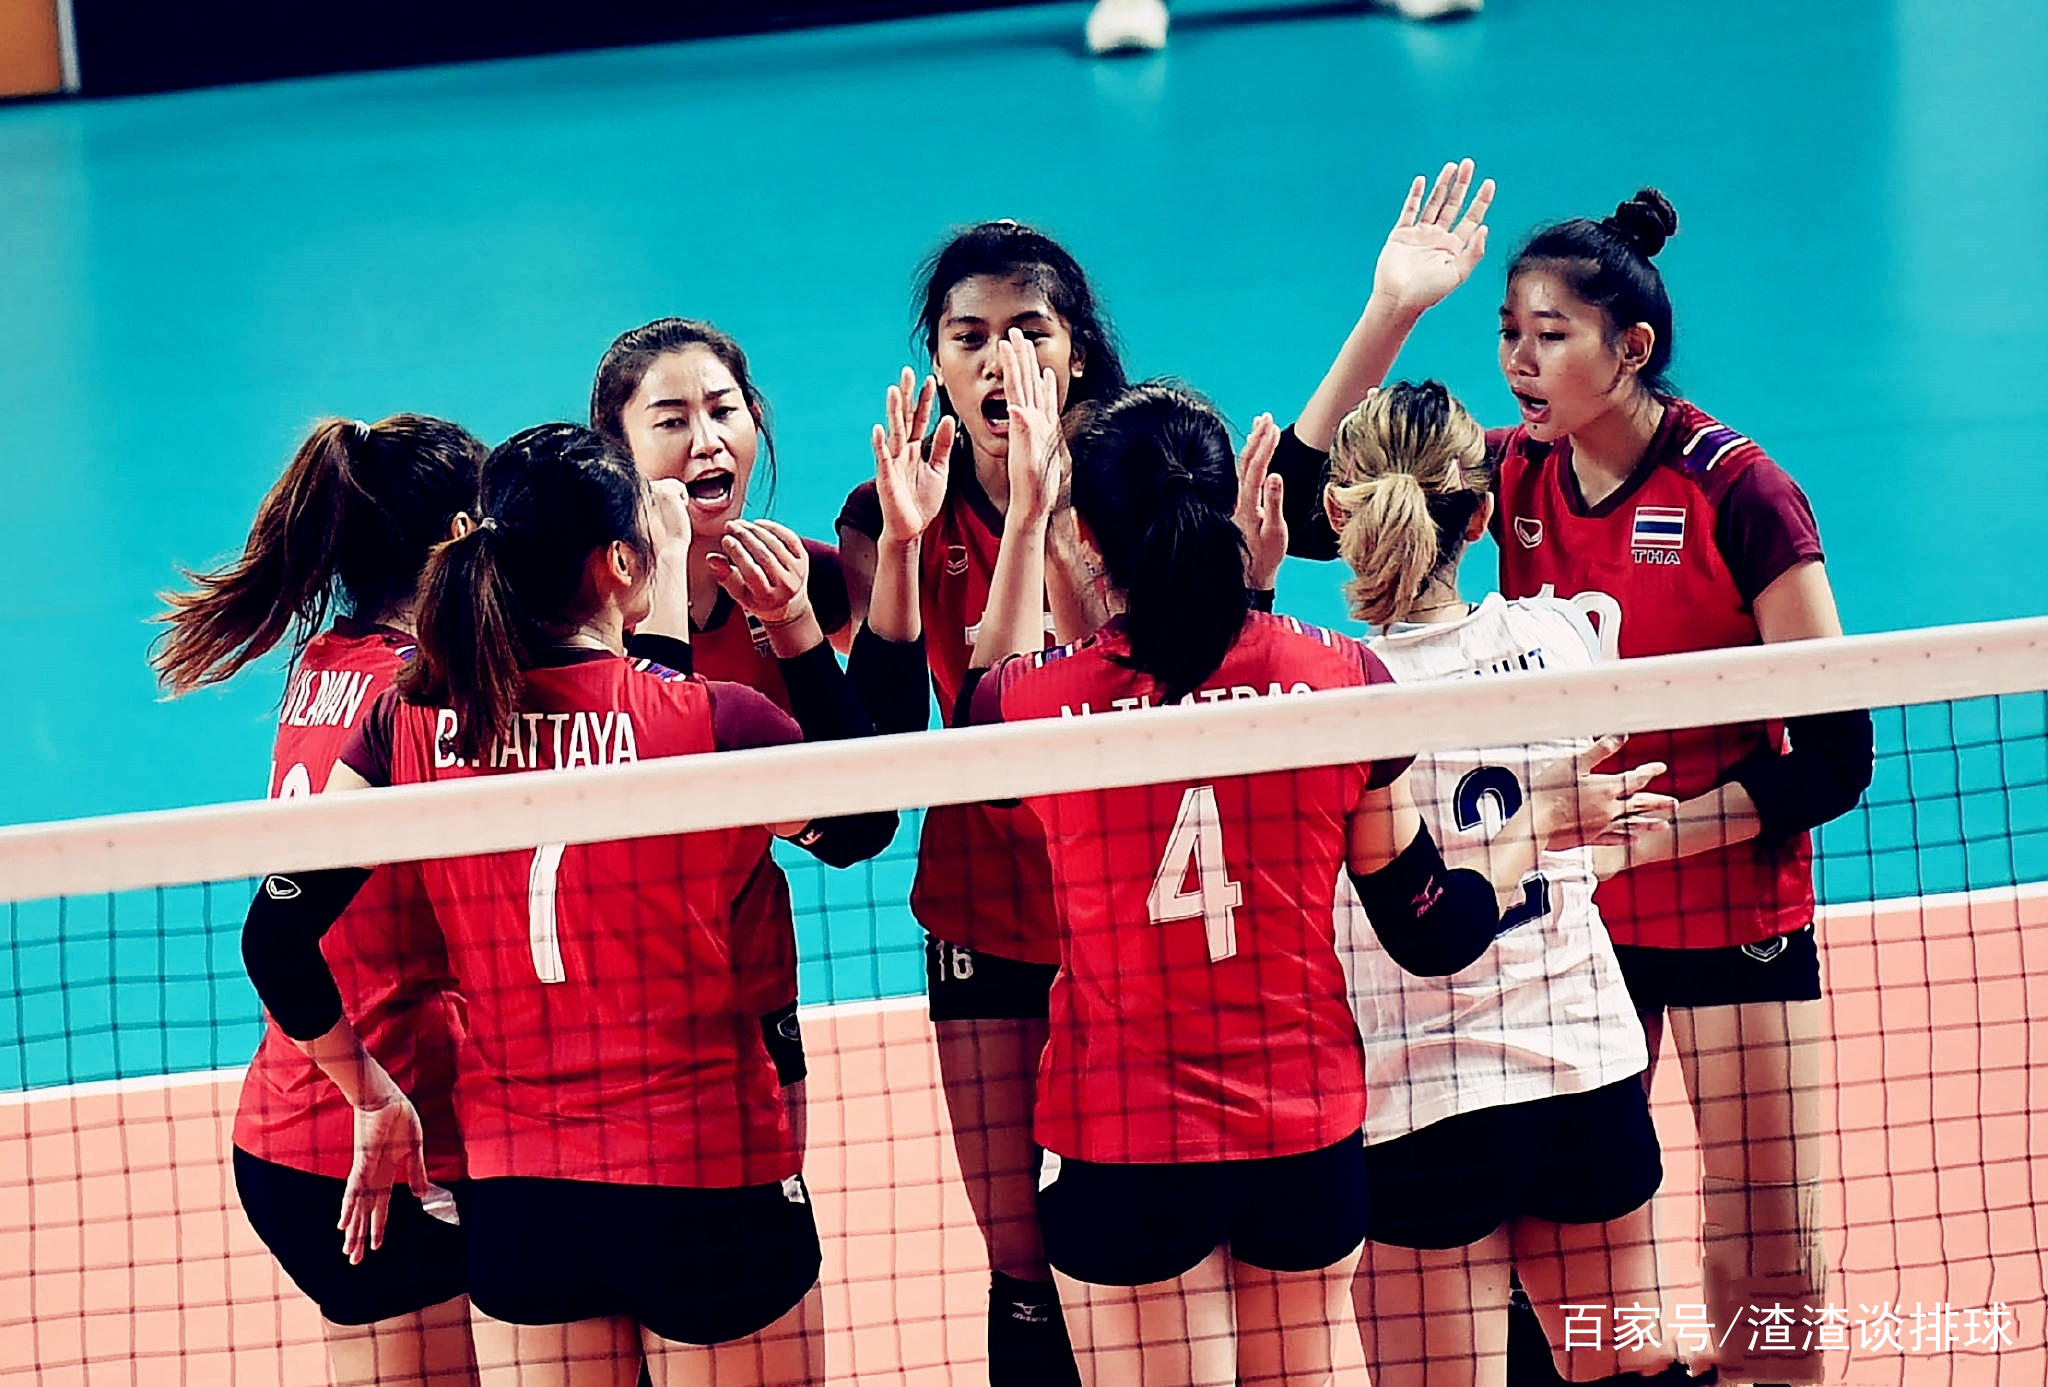 亚运会:泰国女排3-1韩国女排晋级决赛,全场技术